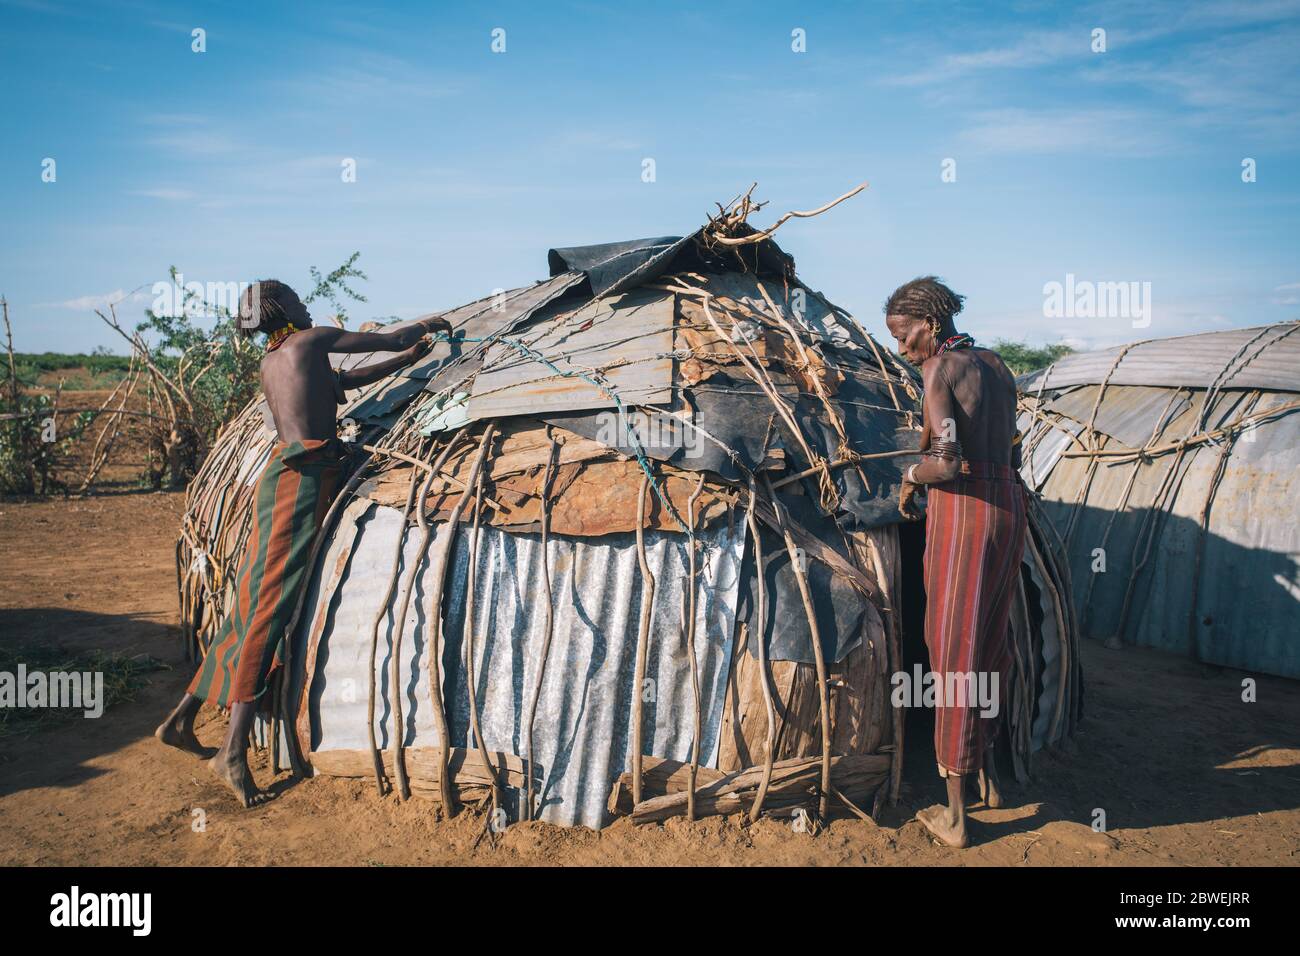 Omorate, Omo Valley, Äthiopien - 11. Mai 2019: Frau vom afrikanischen Stamm Dasanesh repariert Hütte. Daasanach sind die ethnischen Gruppen der Cushiten, die in E leben Stockfoto